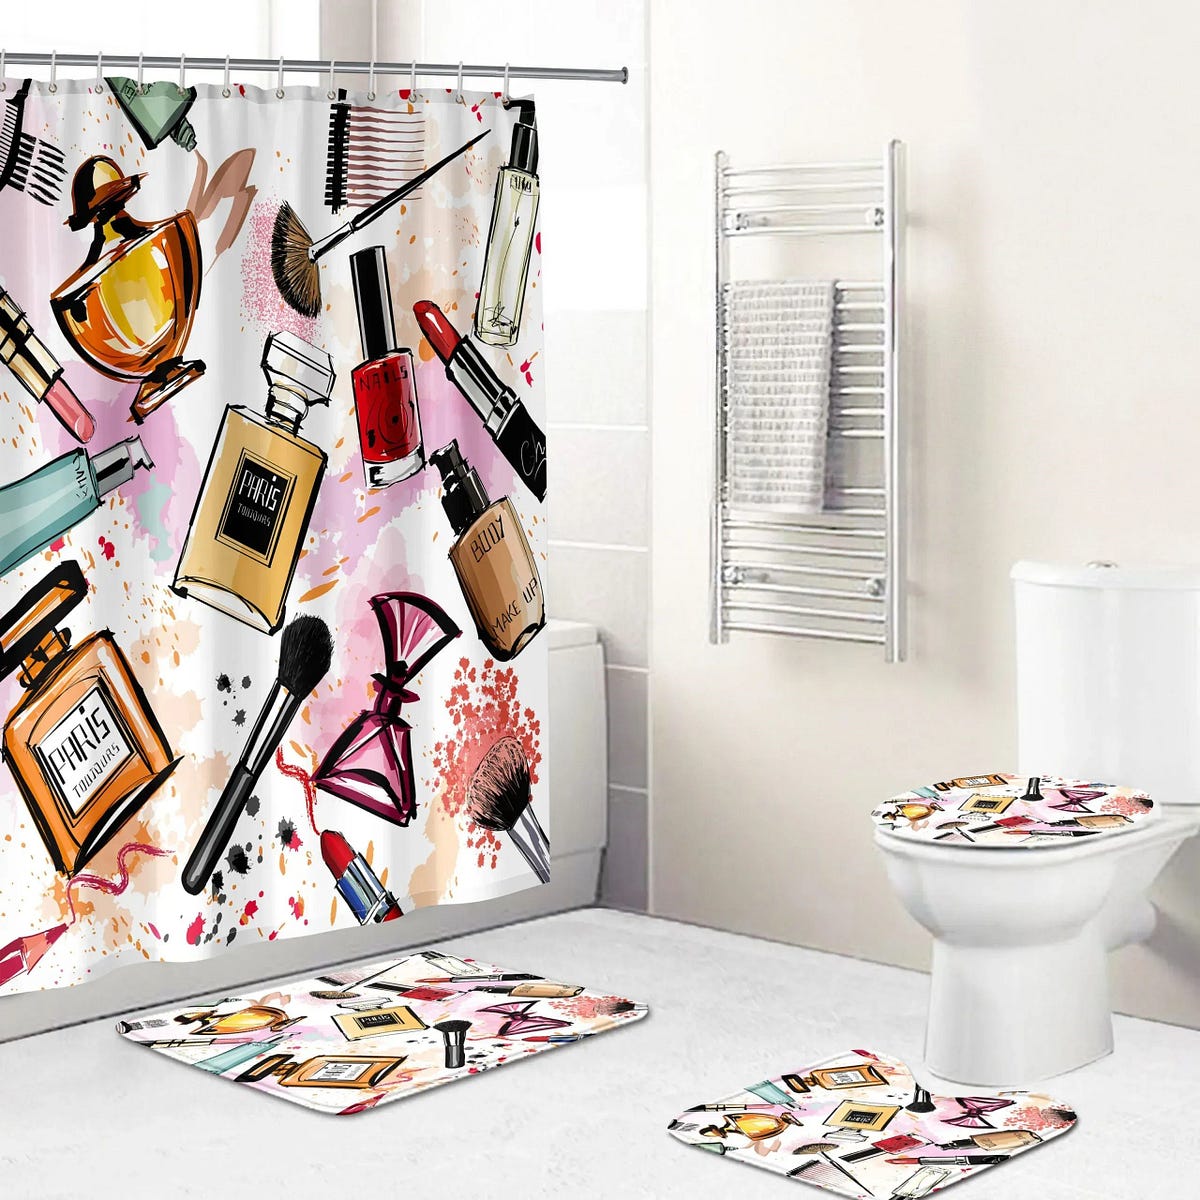 Louis vuitton bathroom set hypebeast luxury fashion brand home decor bath  mat